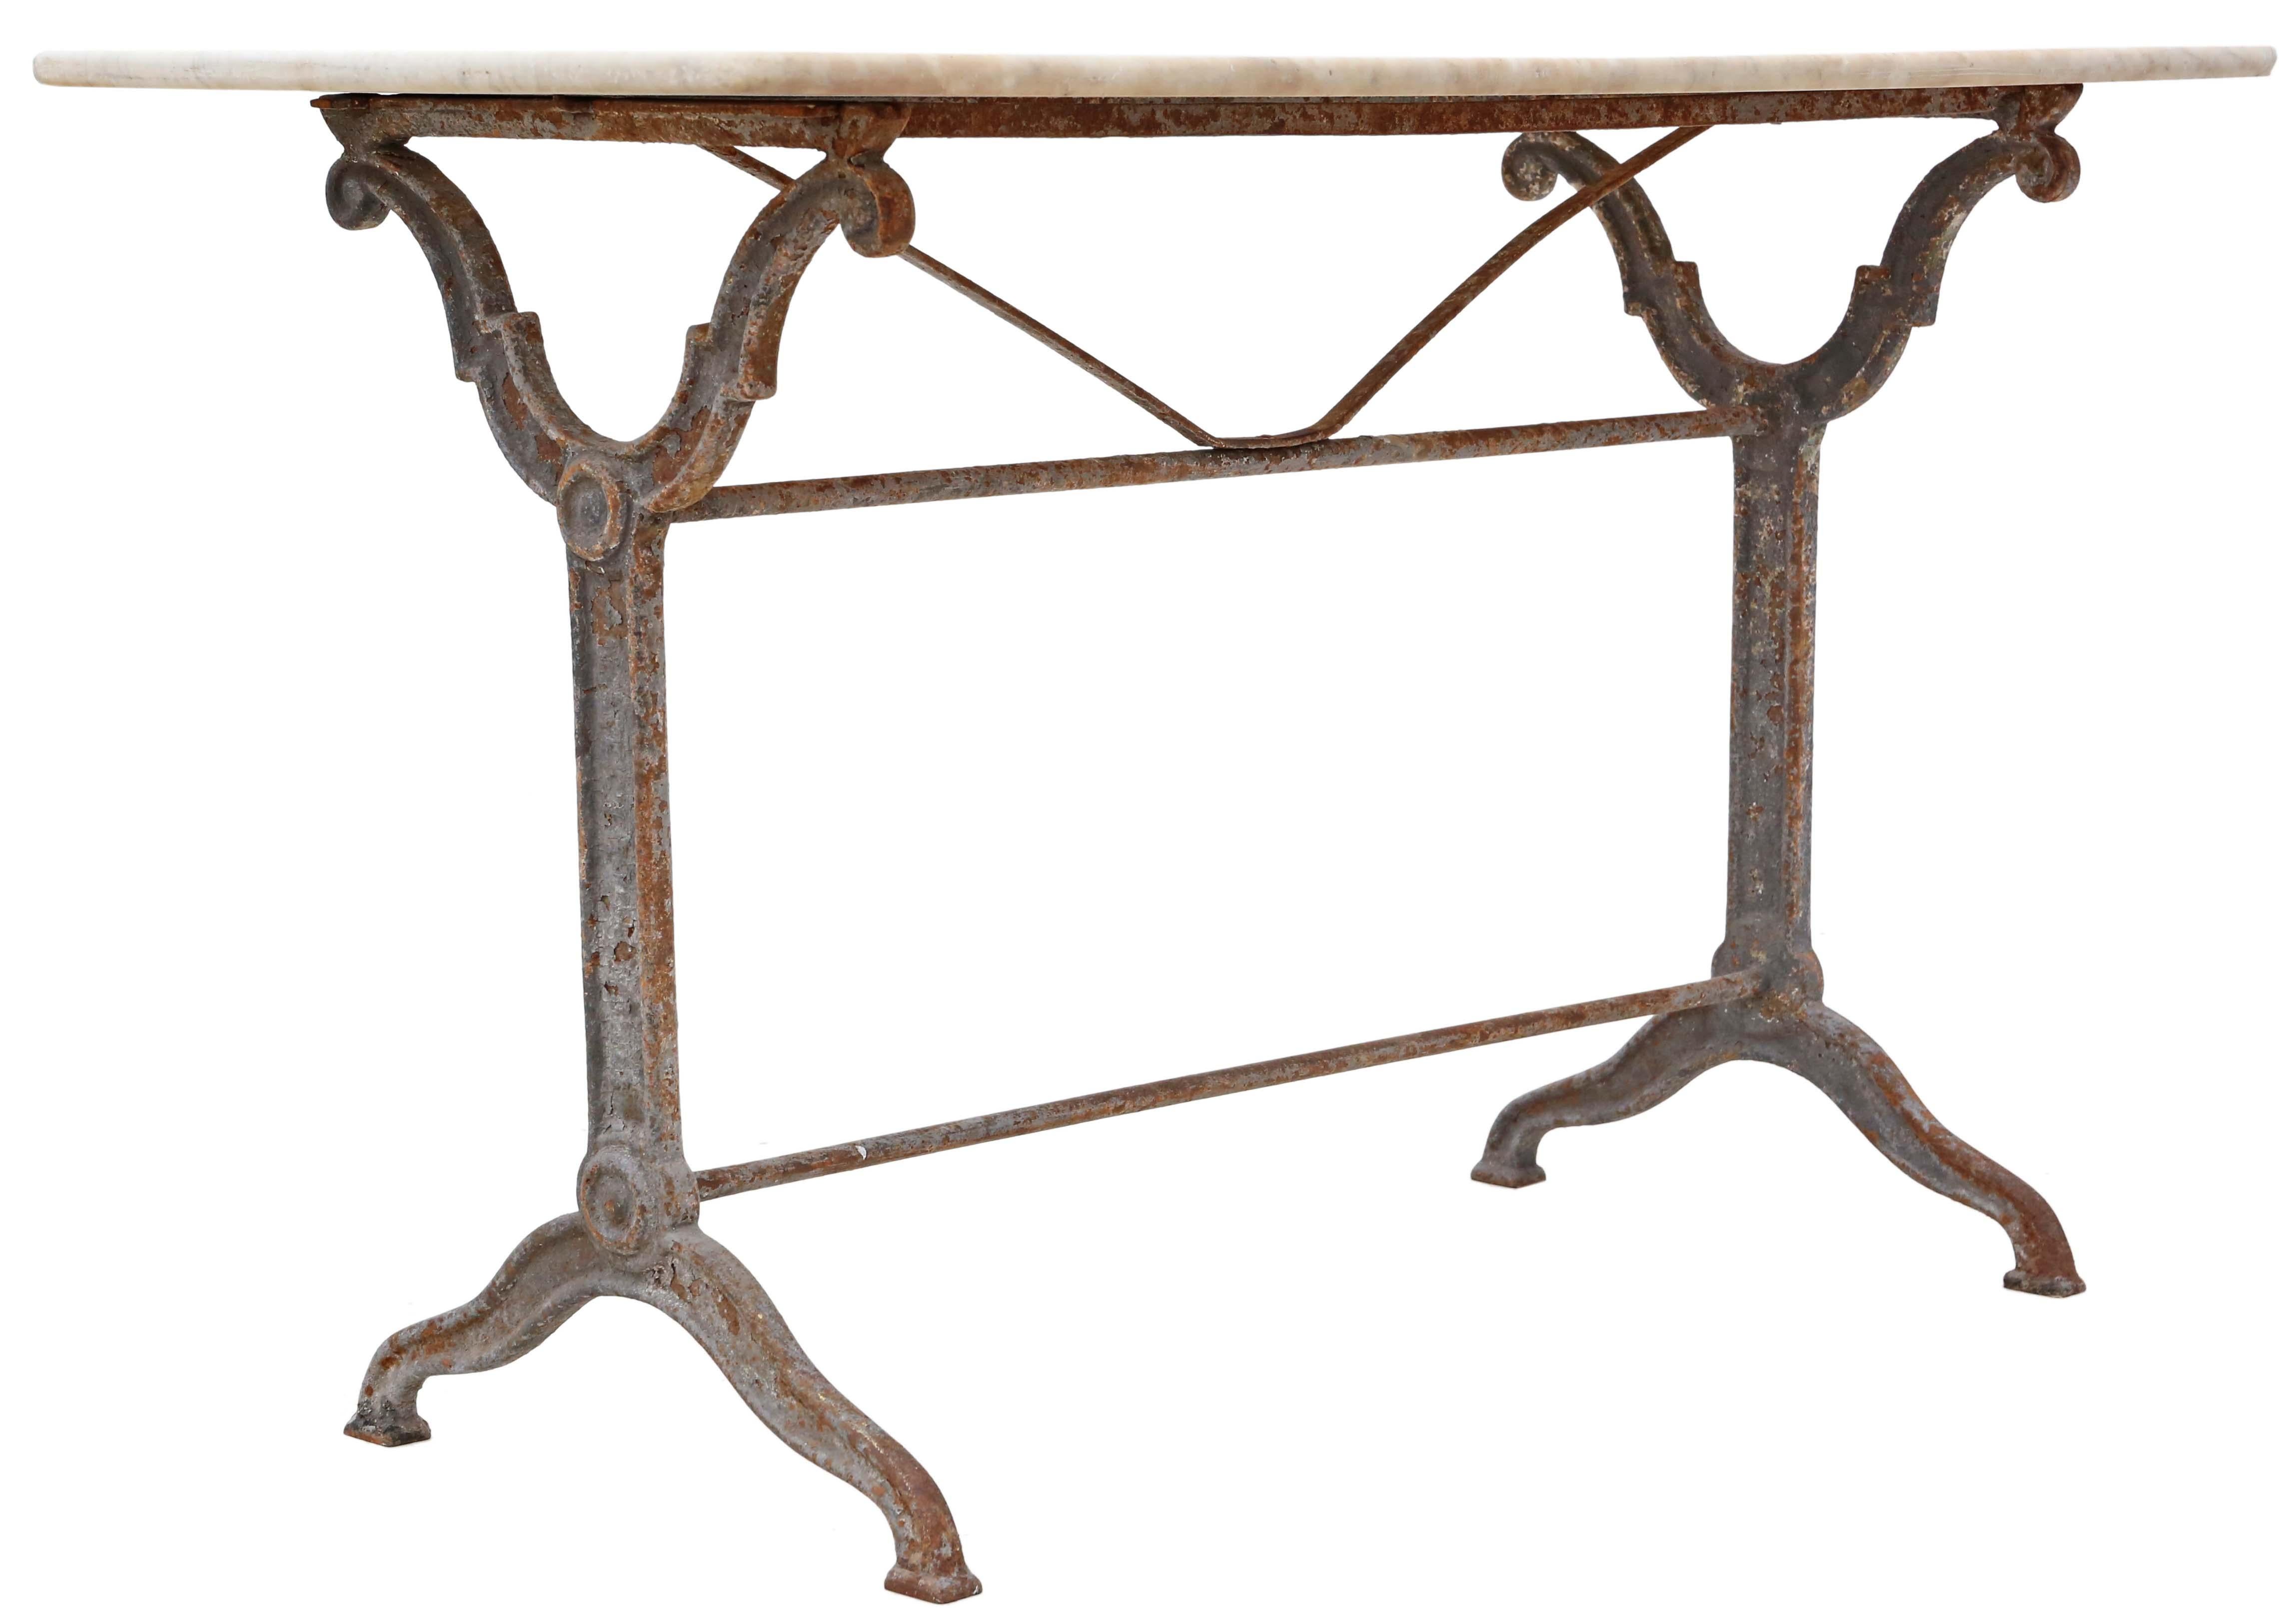 Antique 19th Century marble iron patisserie bistro kitchen garden dining table 2